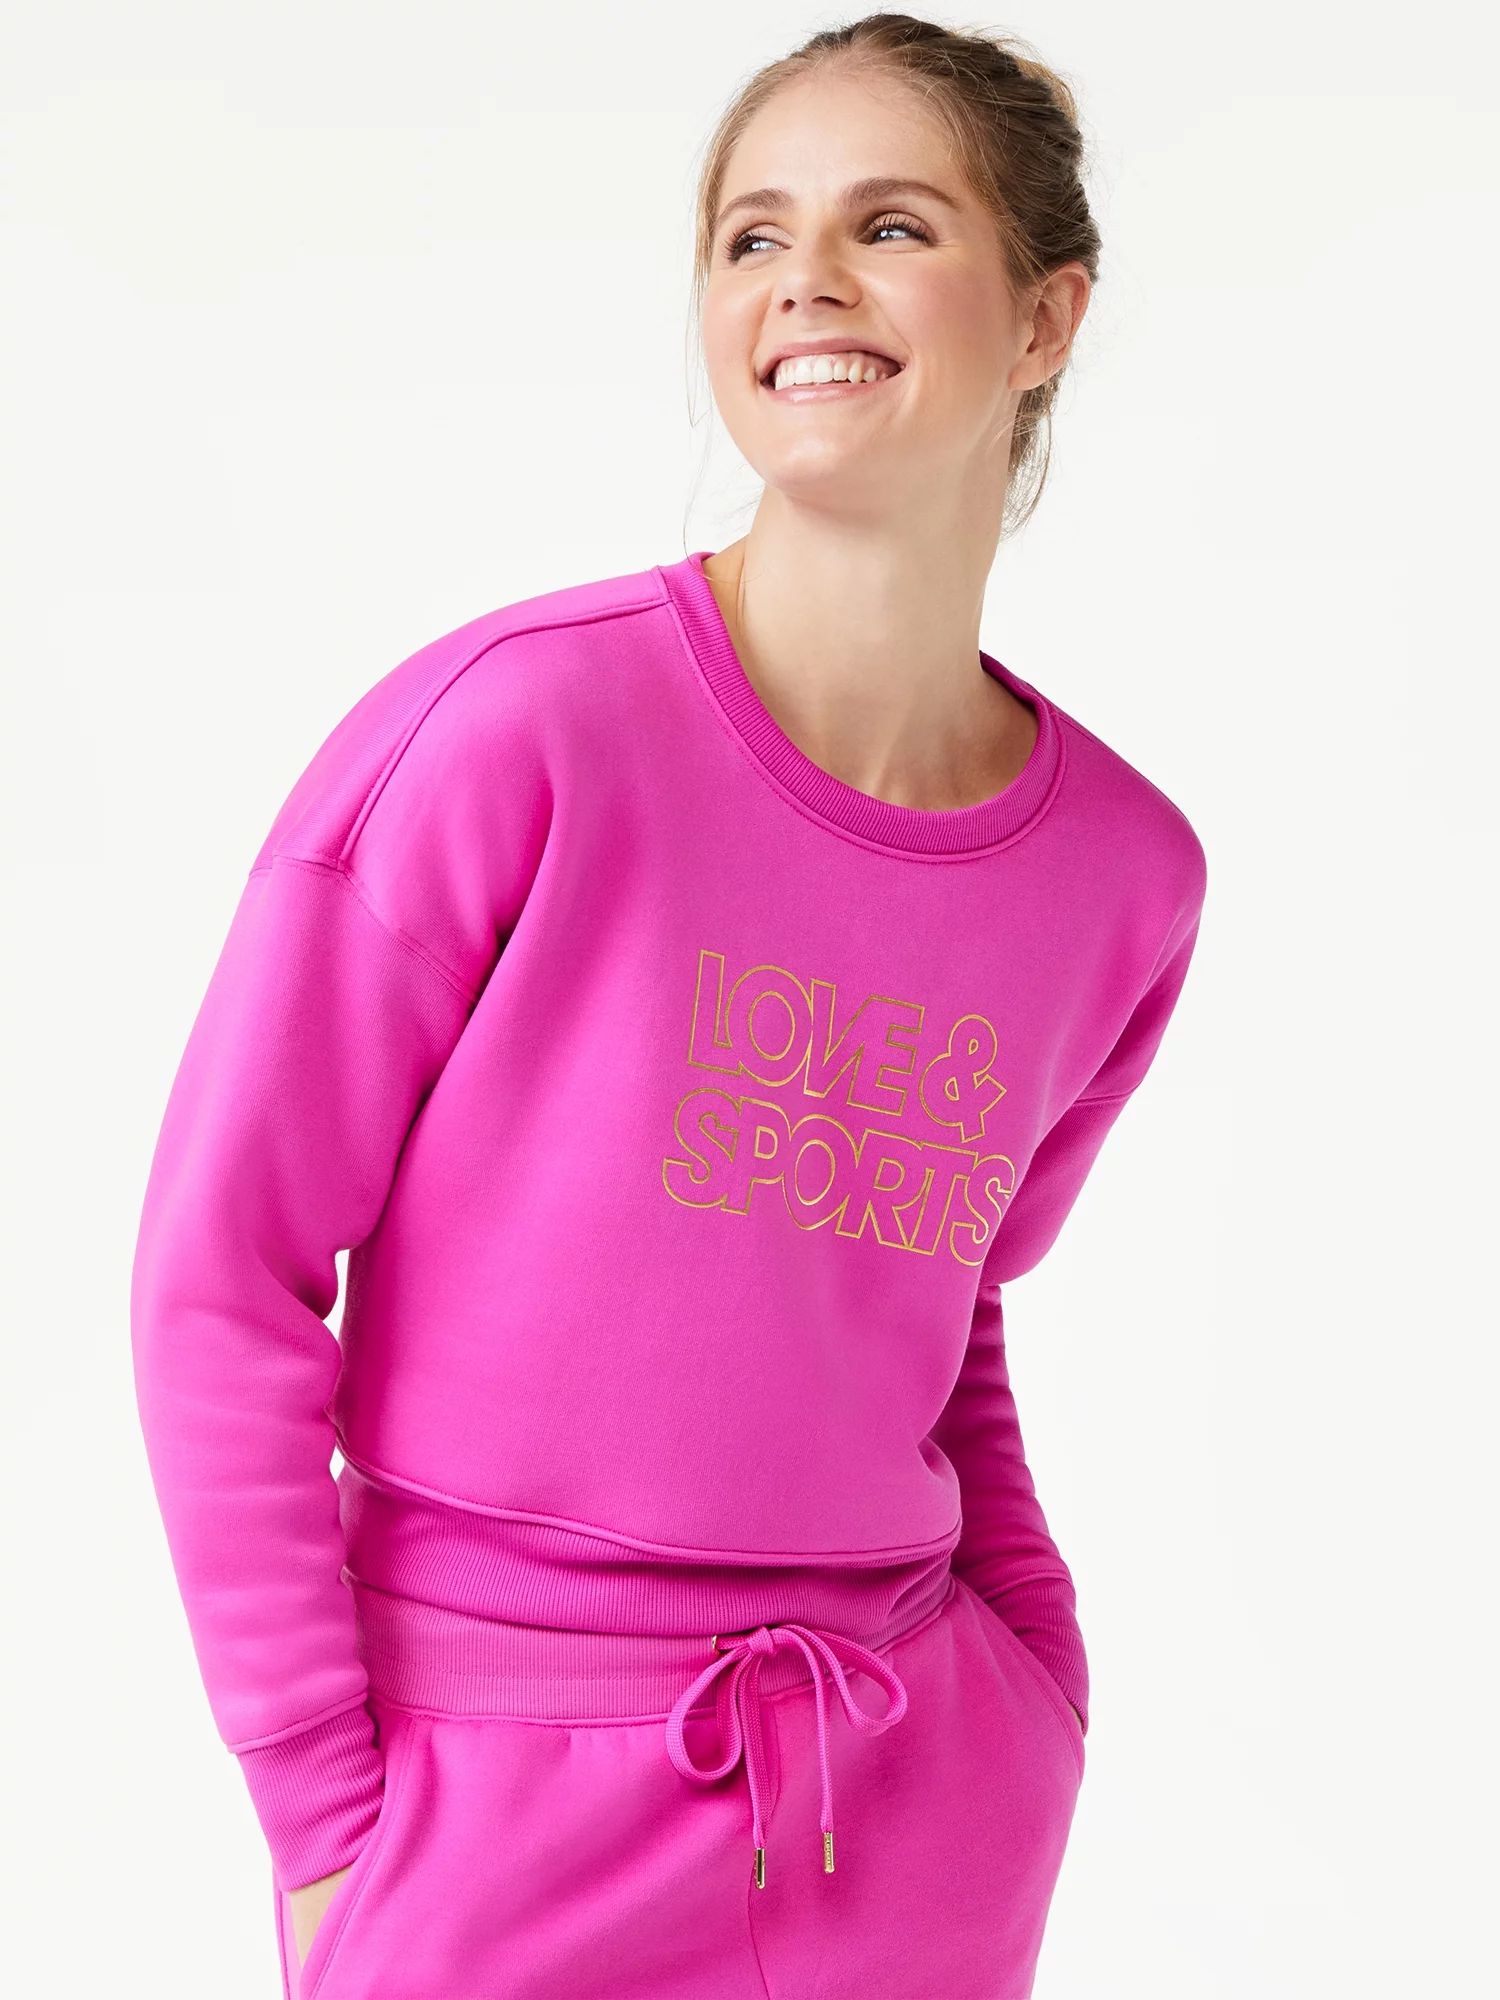 Love & Sports Women's Fleece Cropped Logo Sweatshirt - Walmart.com | Walmart (US)